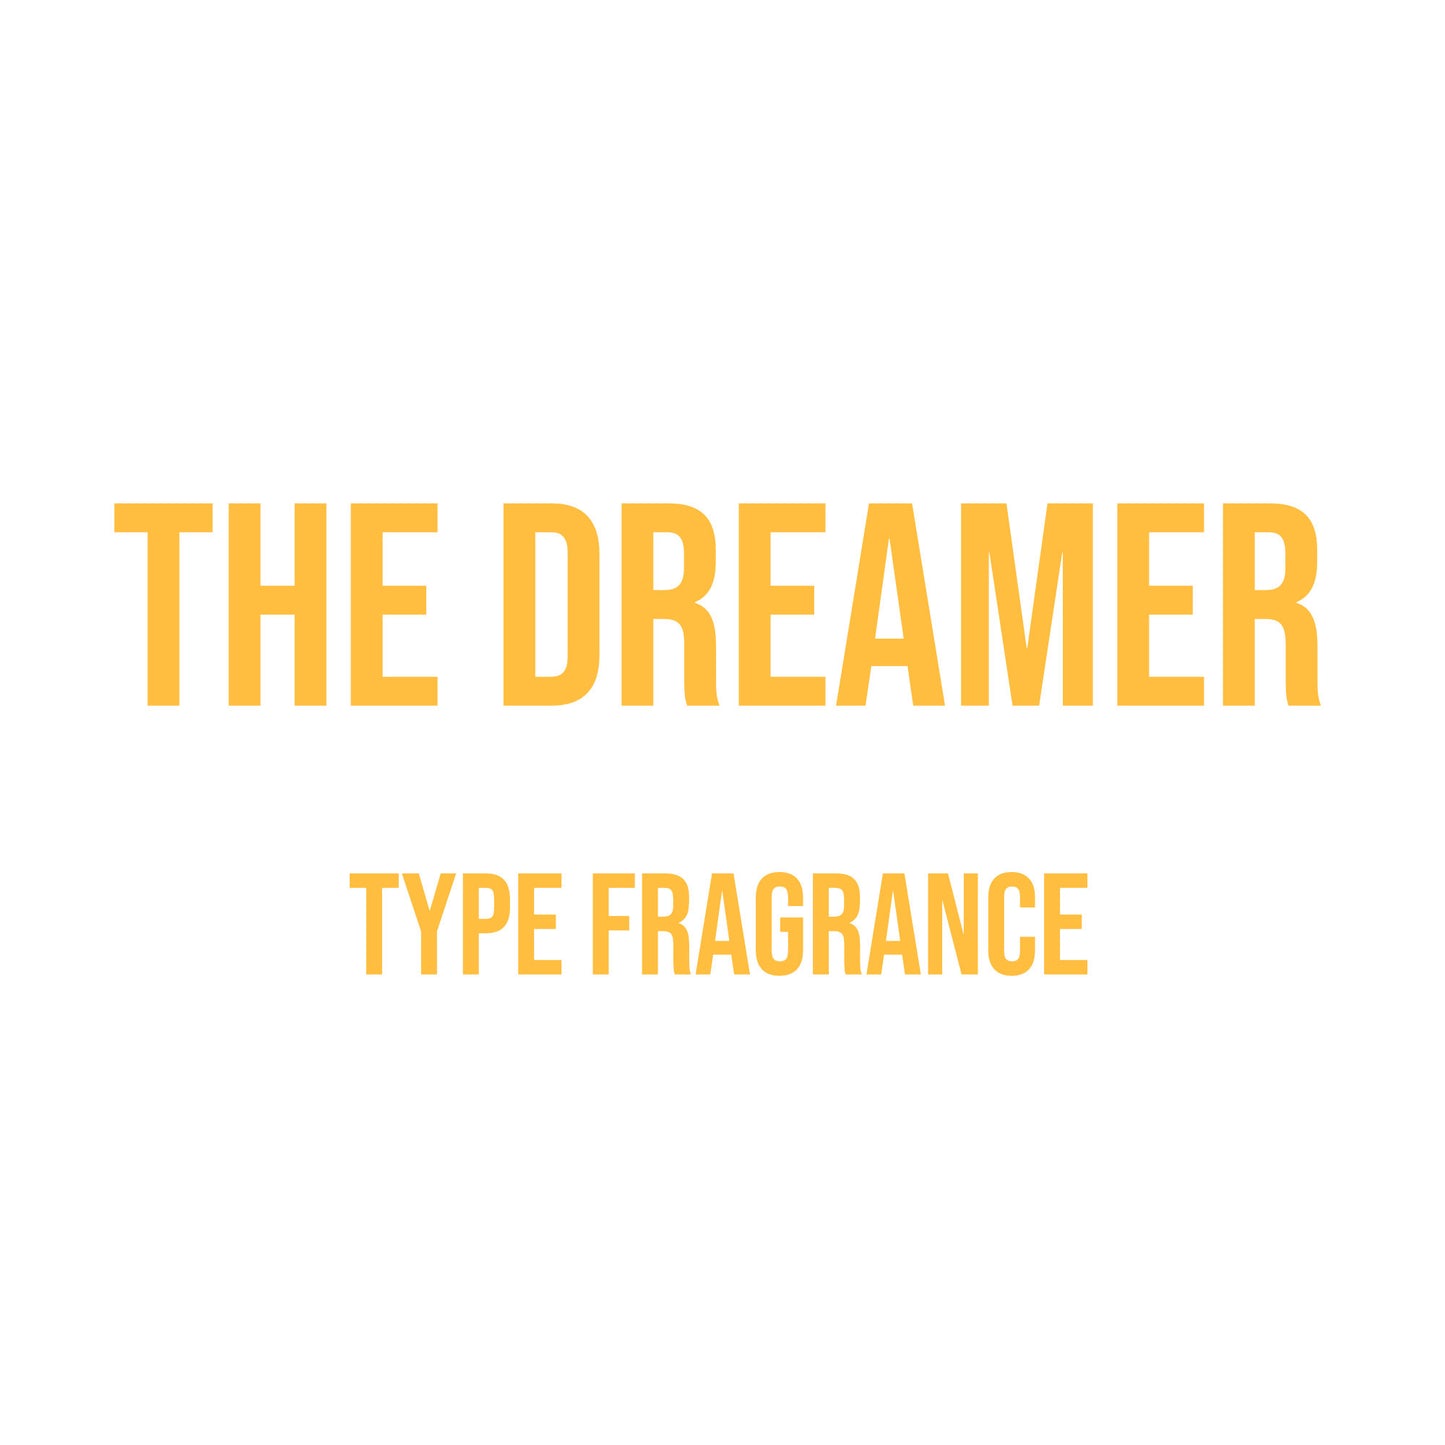 The Dreamer Type Fragrance